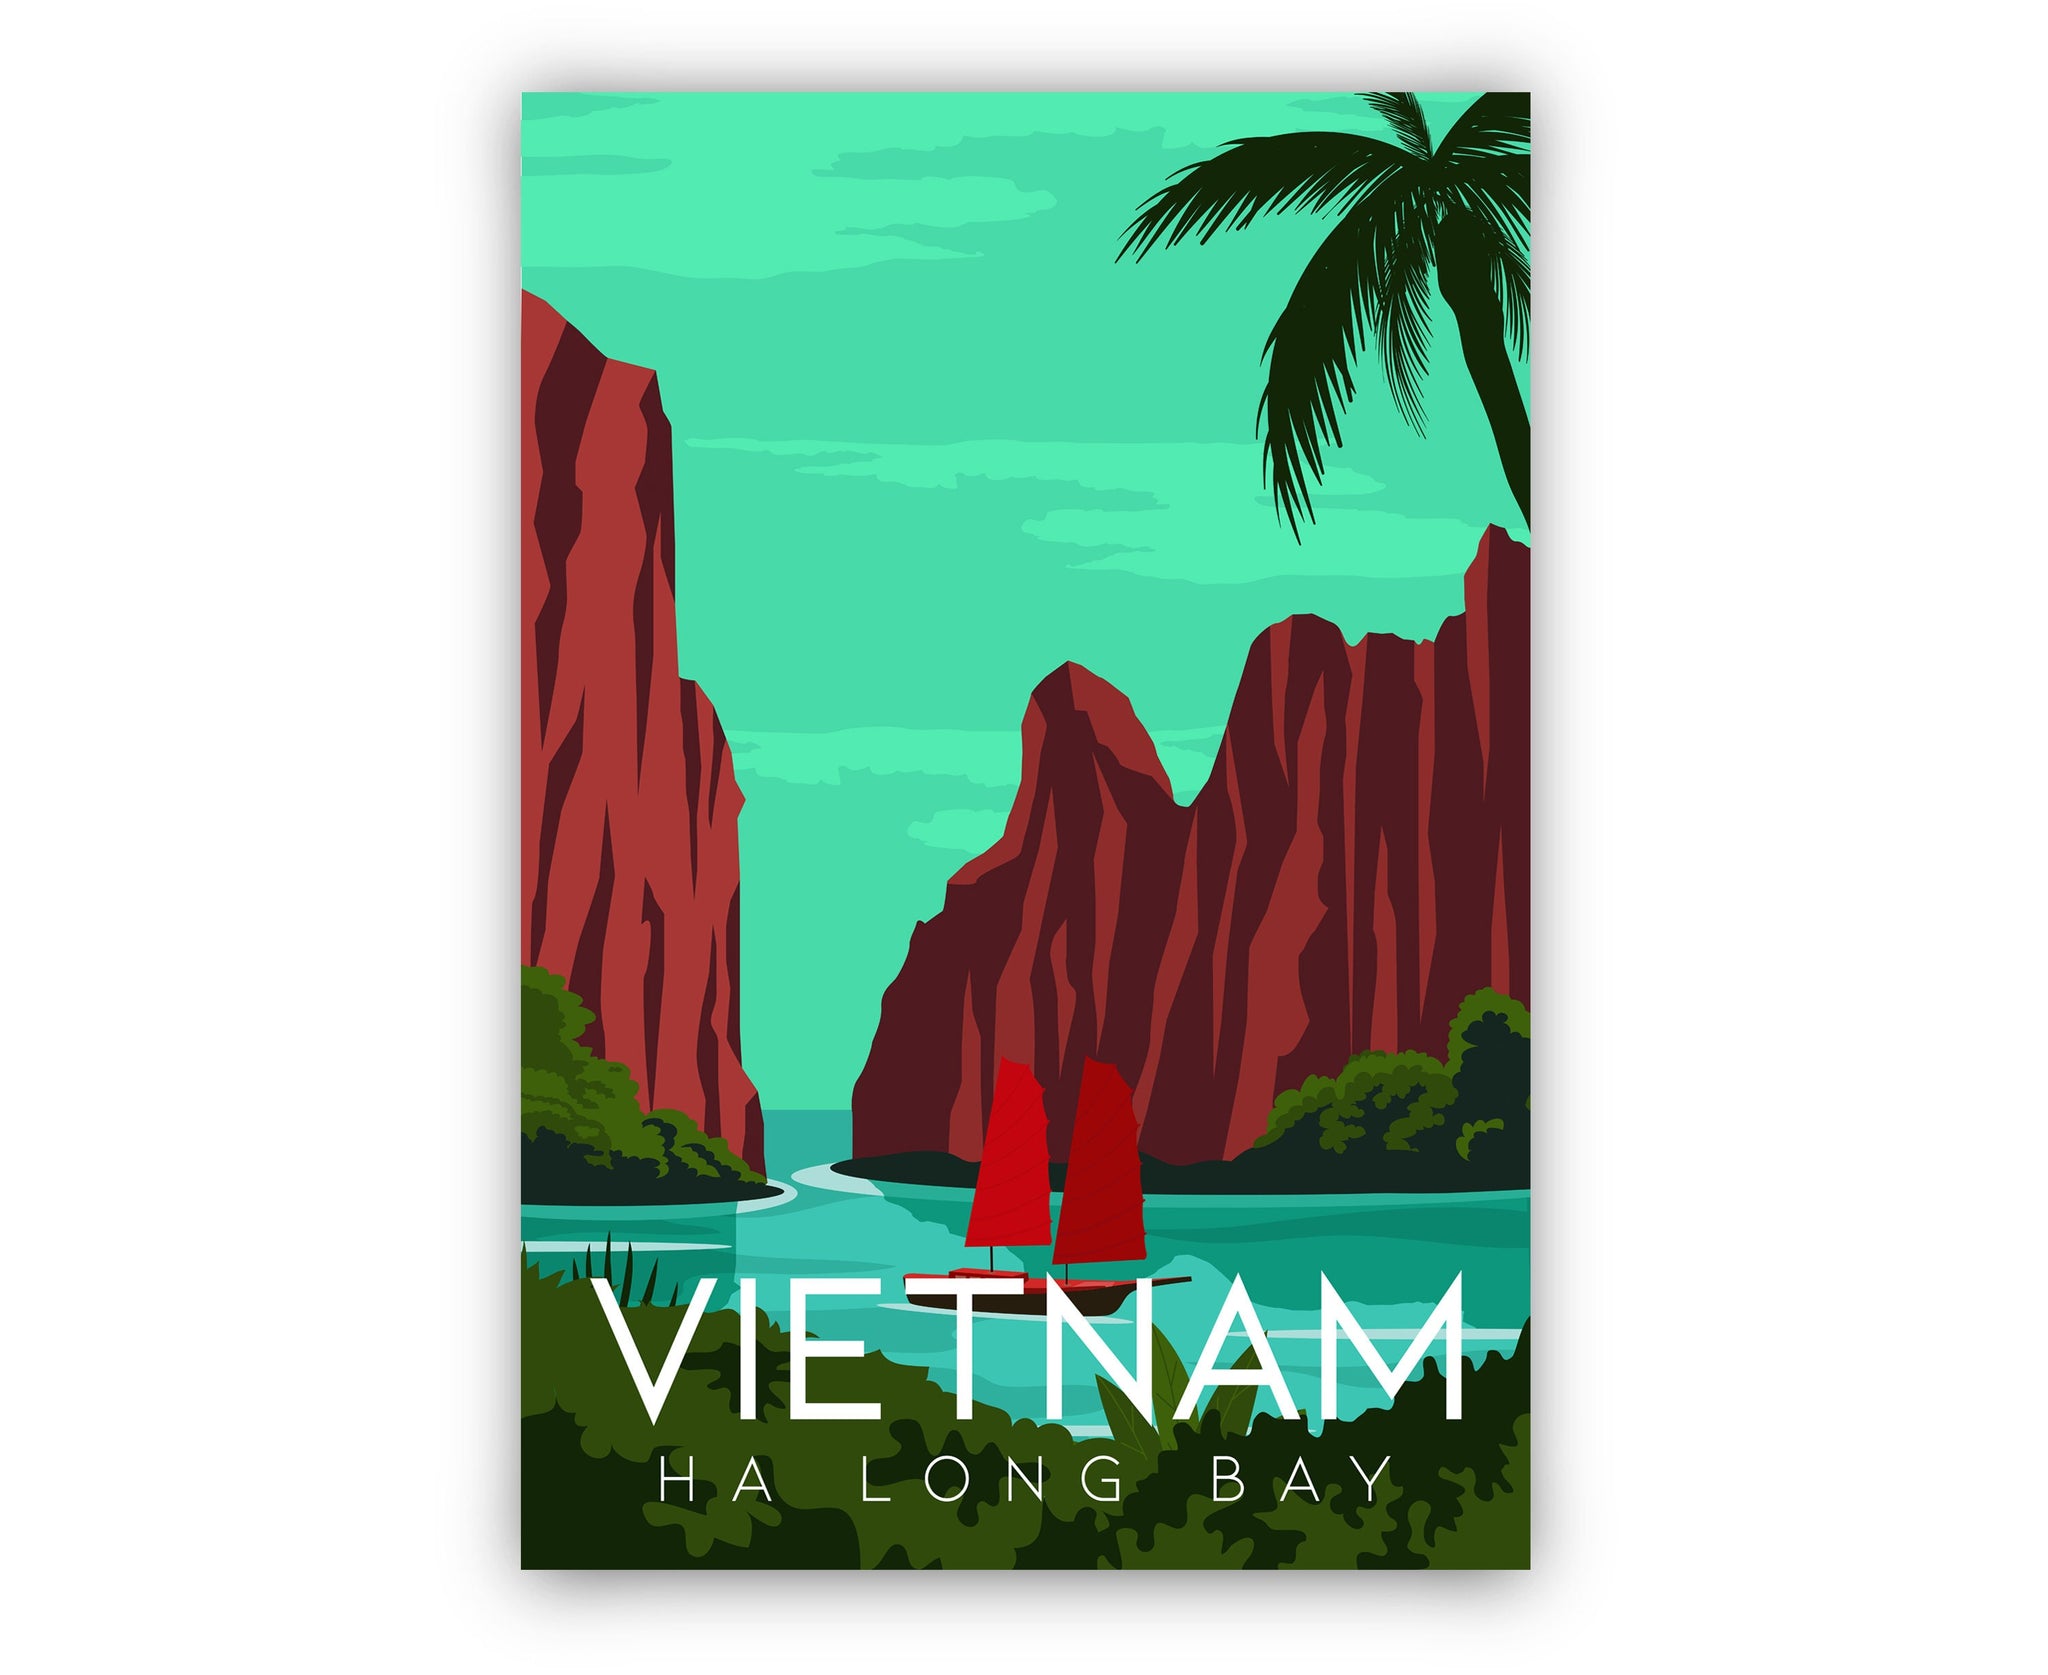 VIETNAM travel poster, Vietnam cityscape poster print, Vietnam landmark poster wall artwork, Home wall art, Office wall decorations